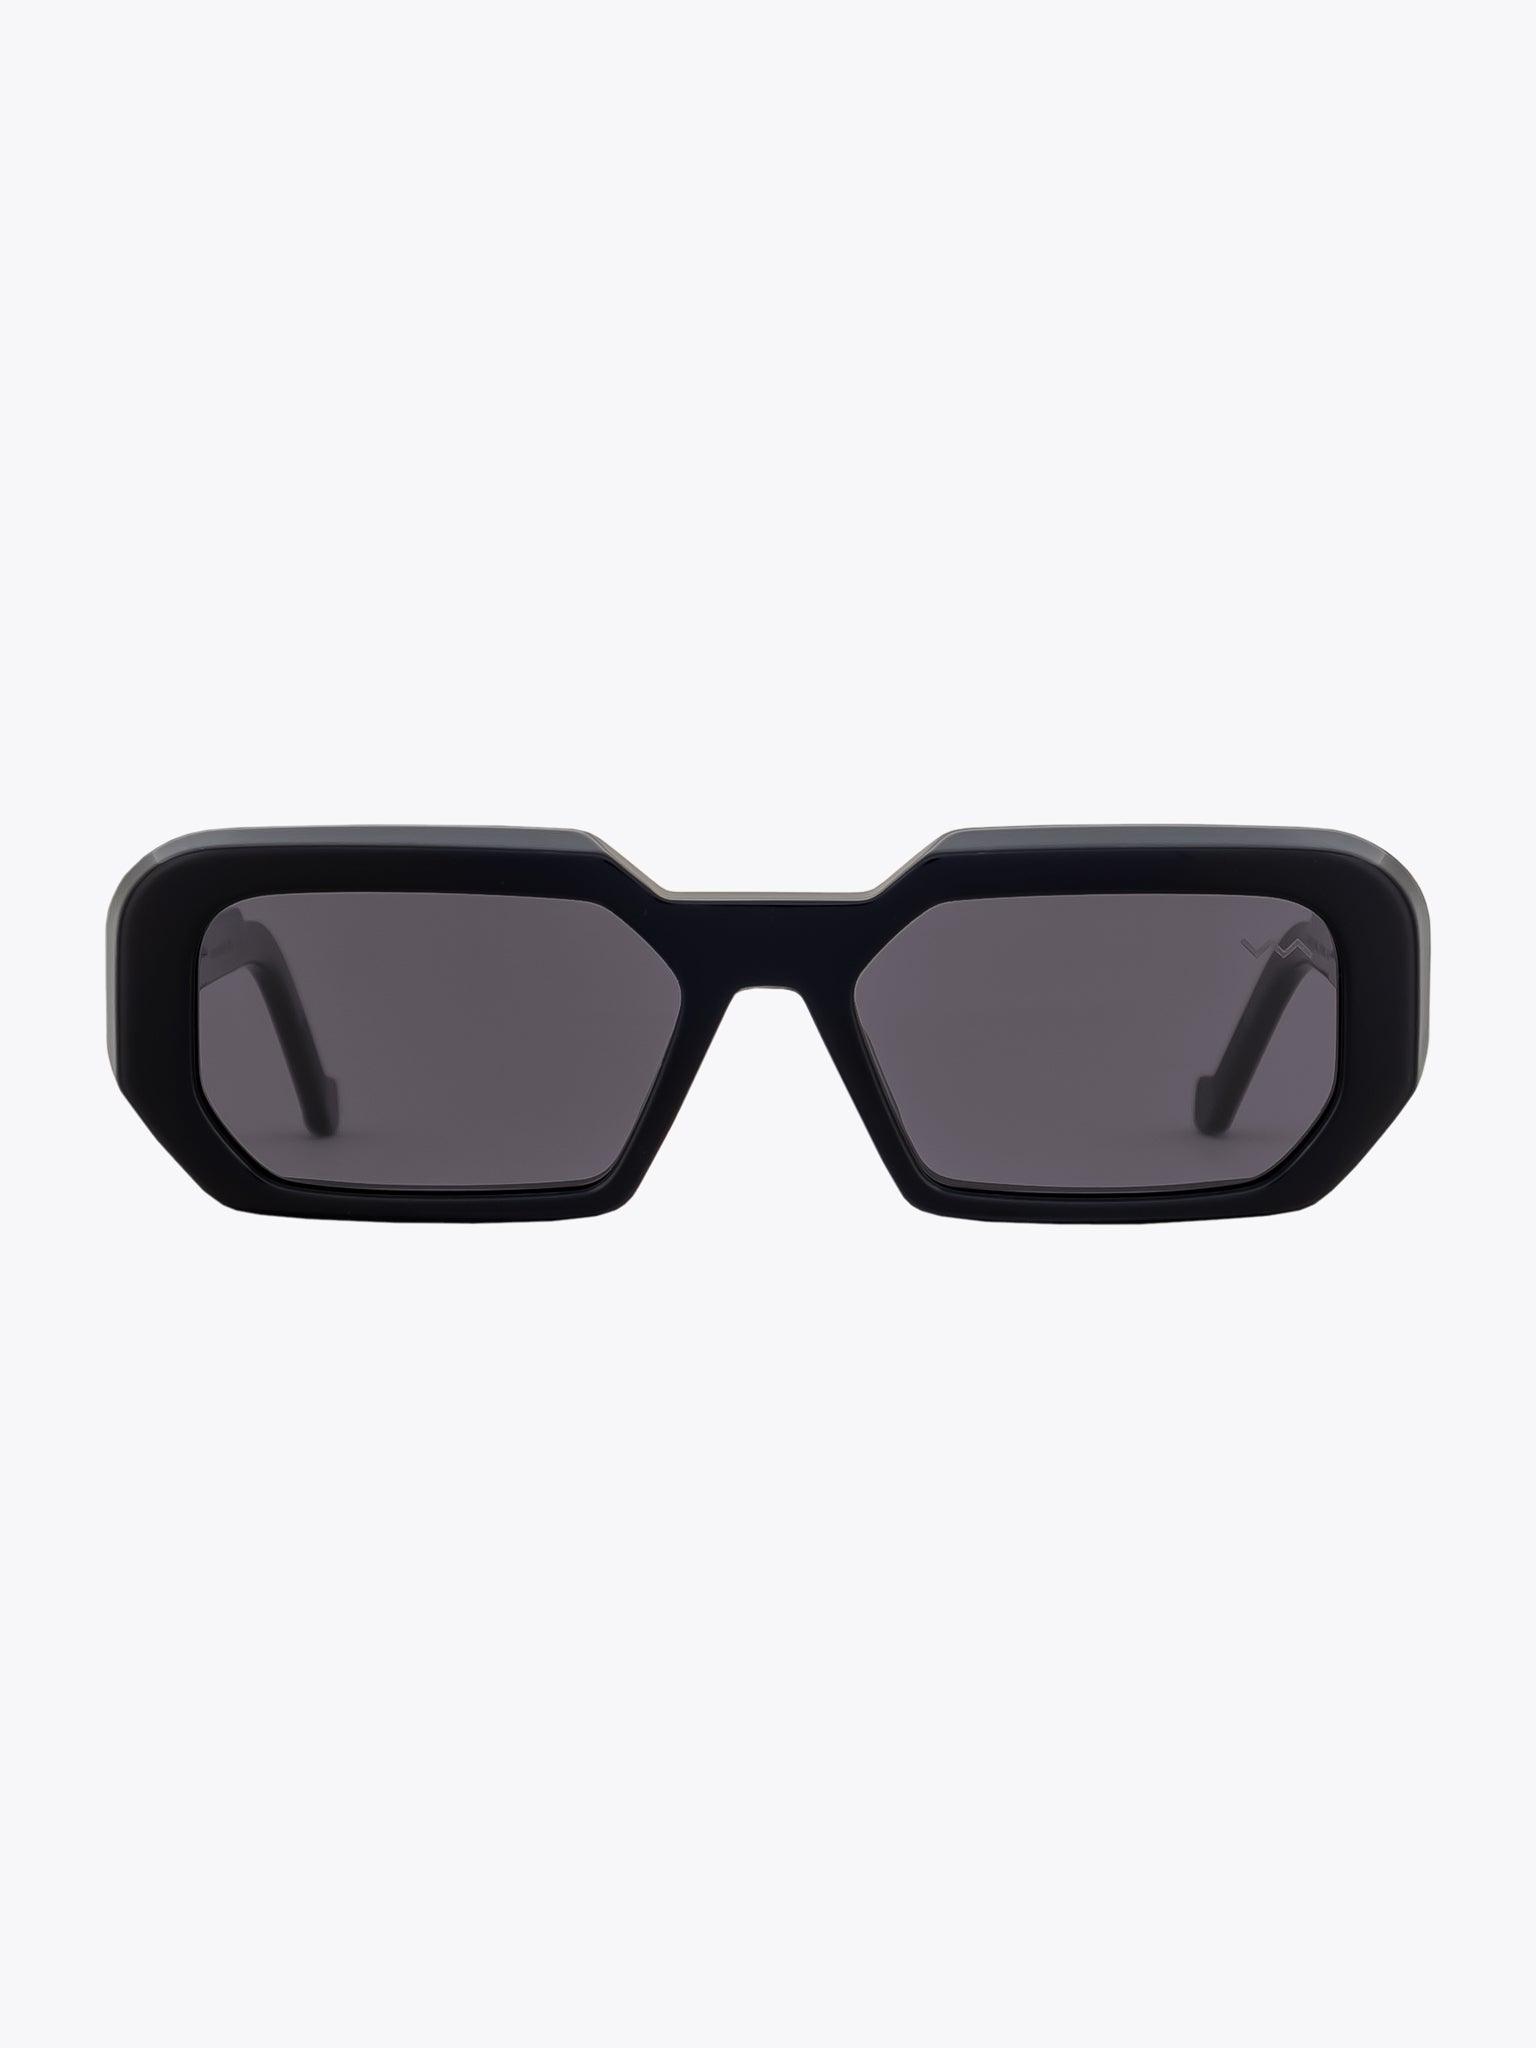 Vava Eyewear WL0052 Black Sunglasses